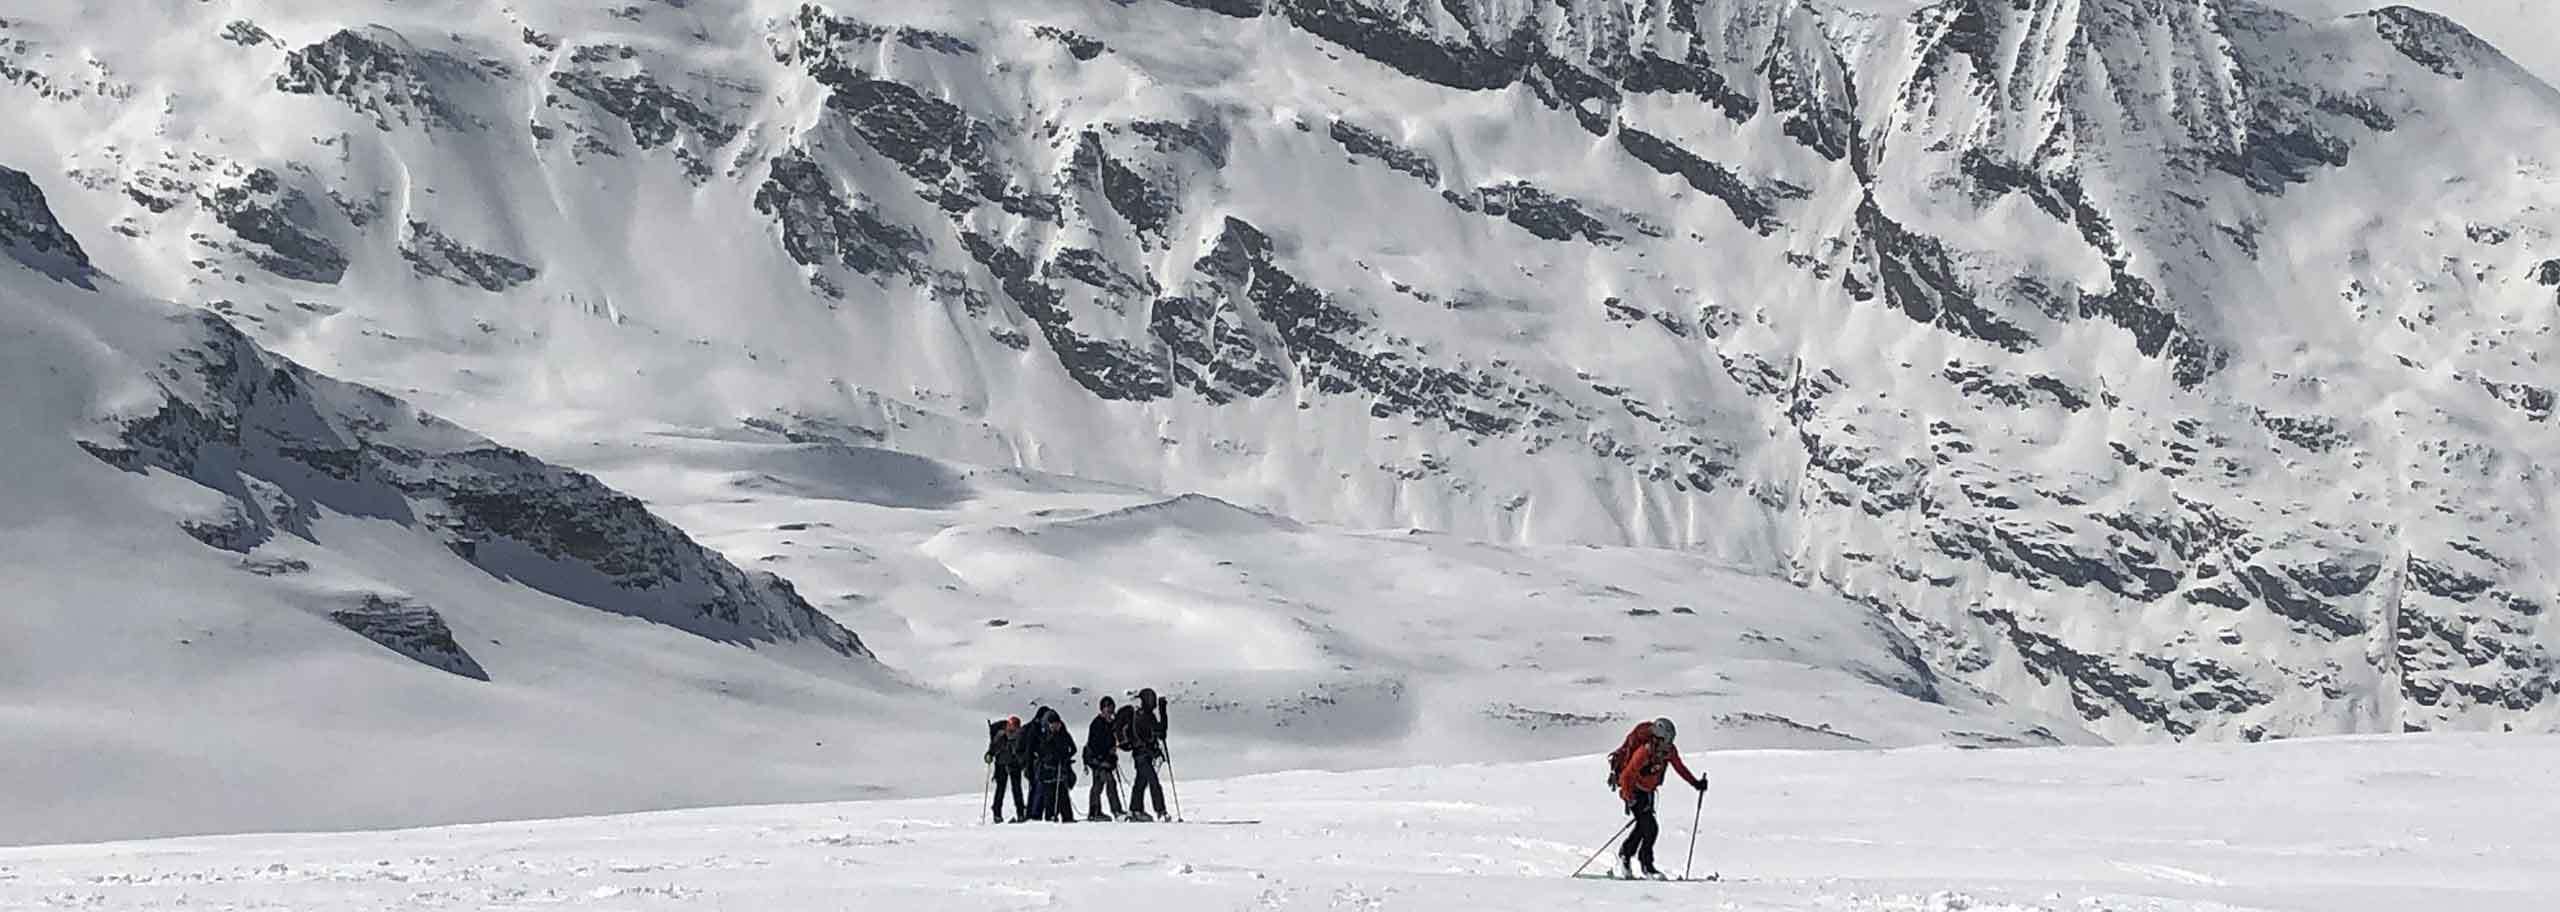 Sci Alpinismo al Gran Paradiso, Escursioni e Corsi Sci Alpinistici